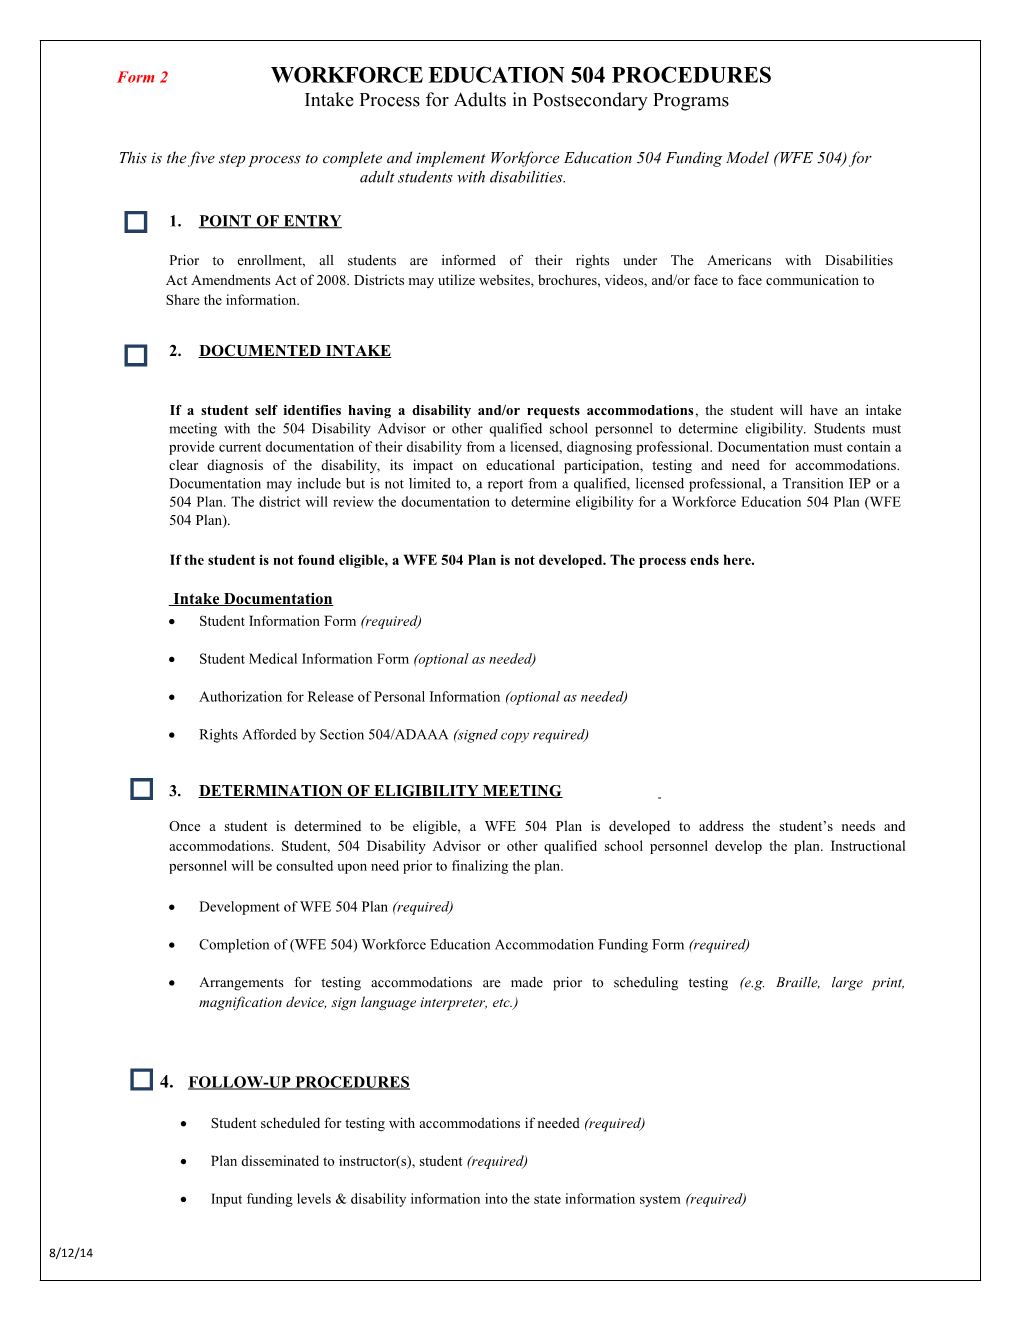 Form 2 - Intake Procedures Checklist